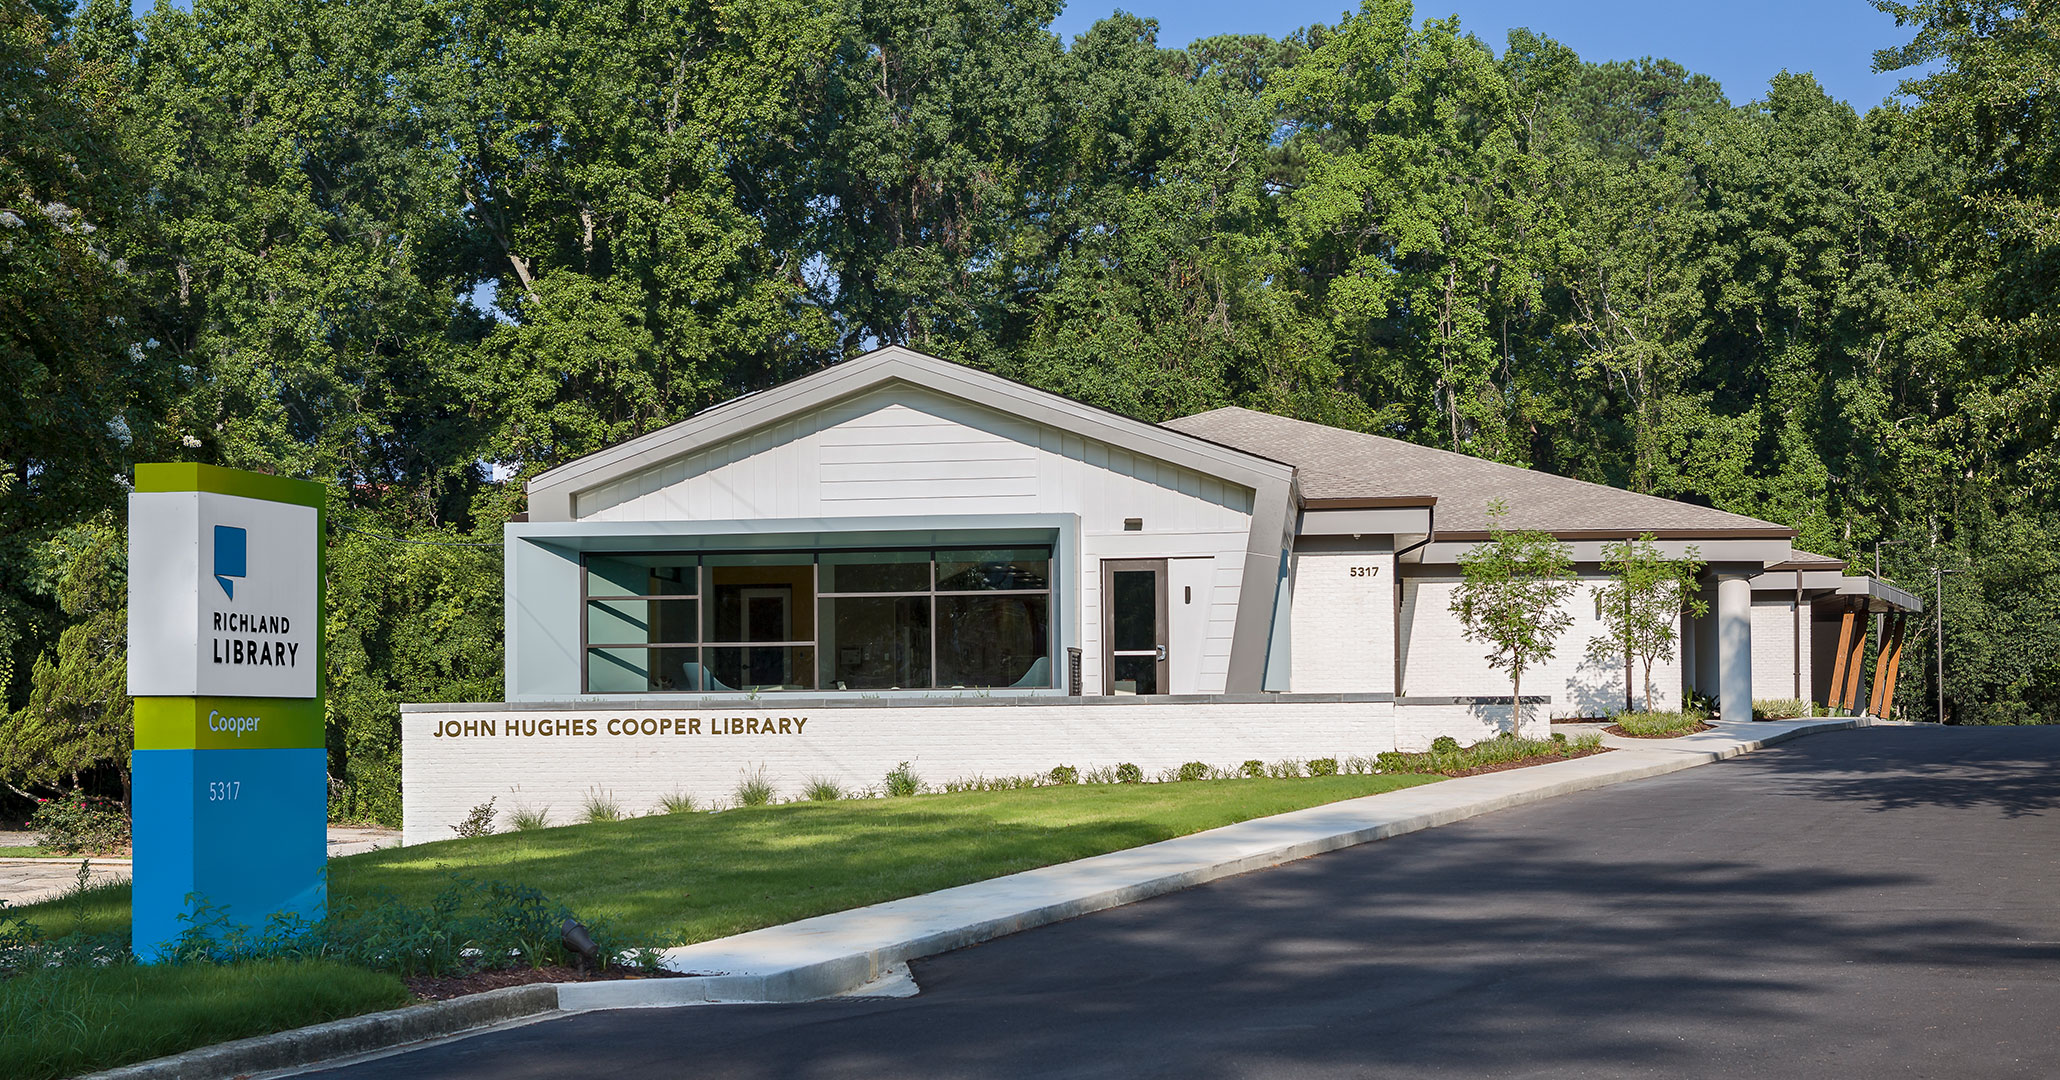 Boudreaux designed exterior spaces for public library patrons.